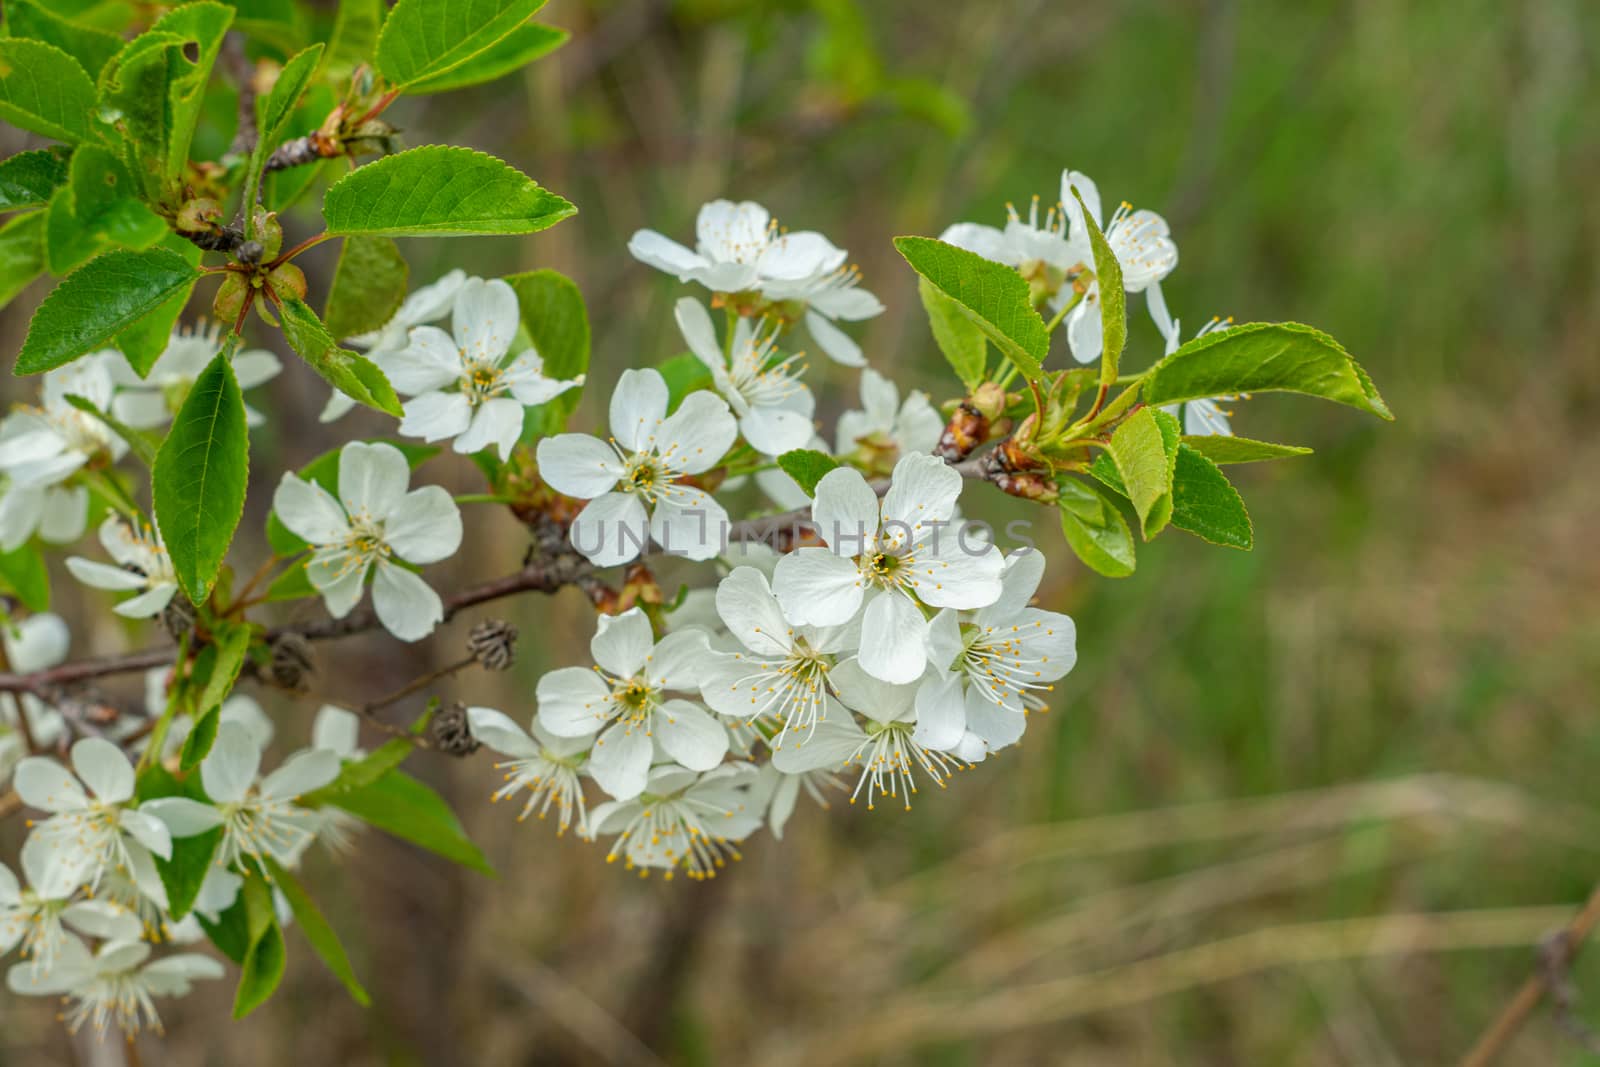 white and dense blossom on tree in spring by Serhii_Voroshchuk